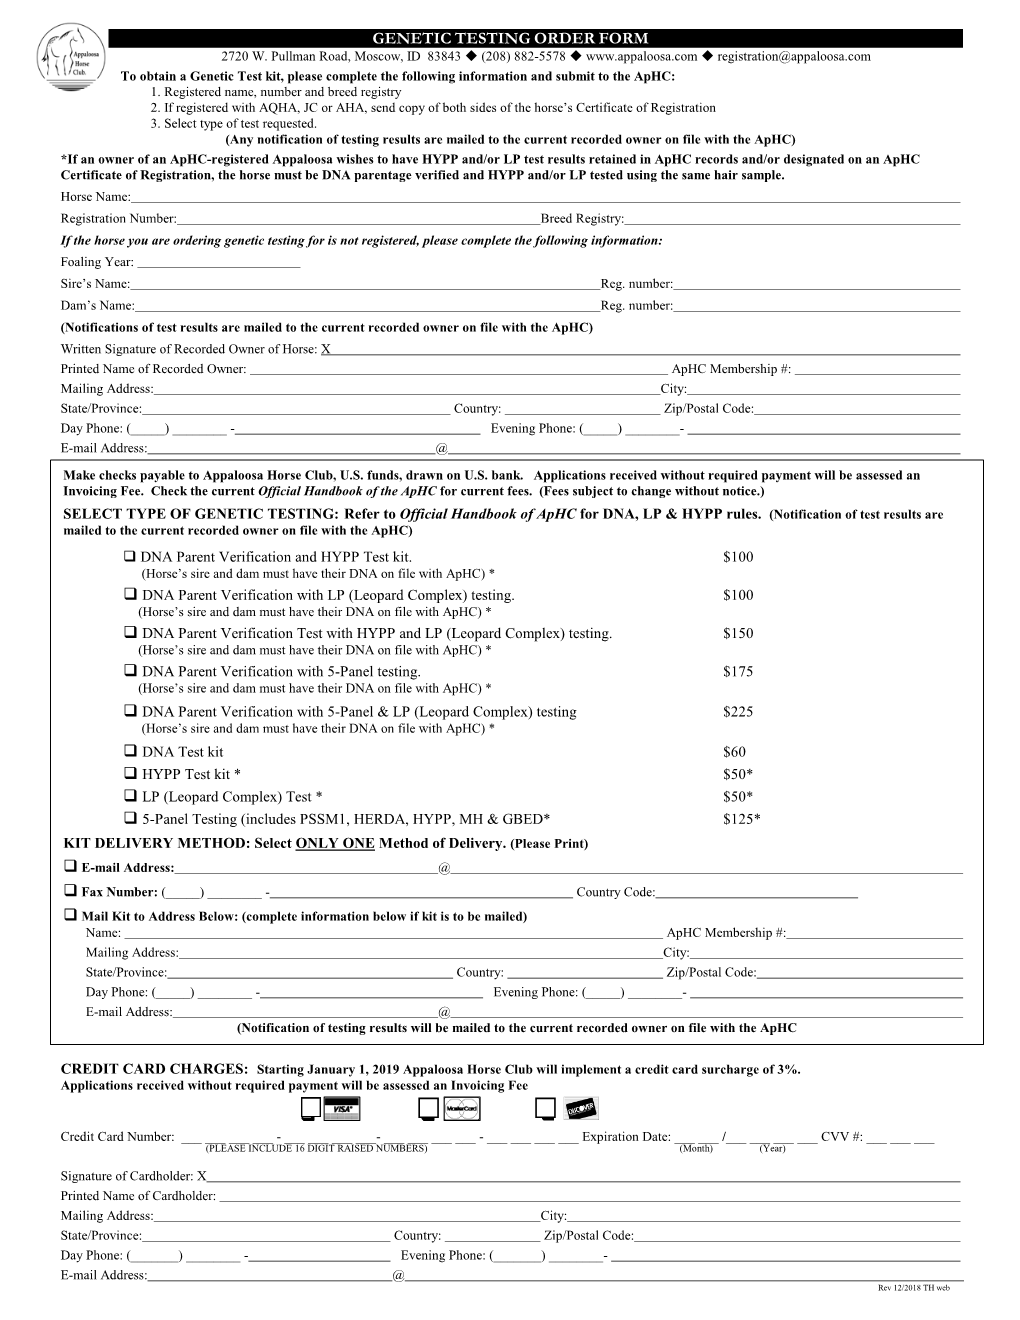 DNA Test Kit Order Form